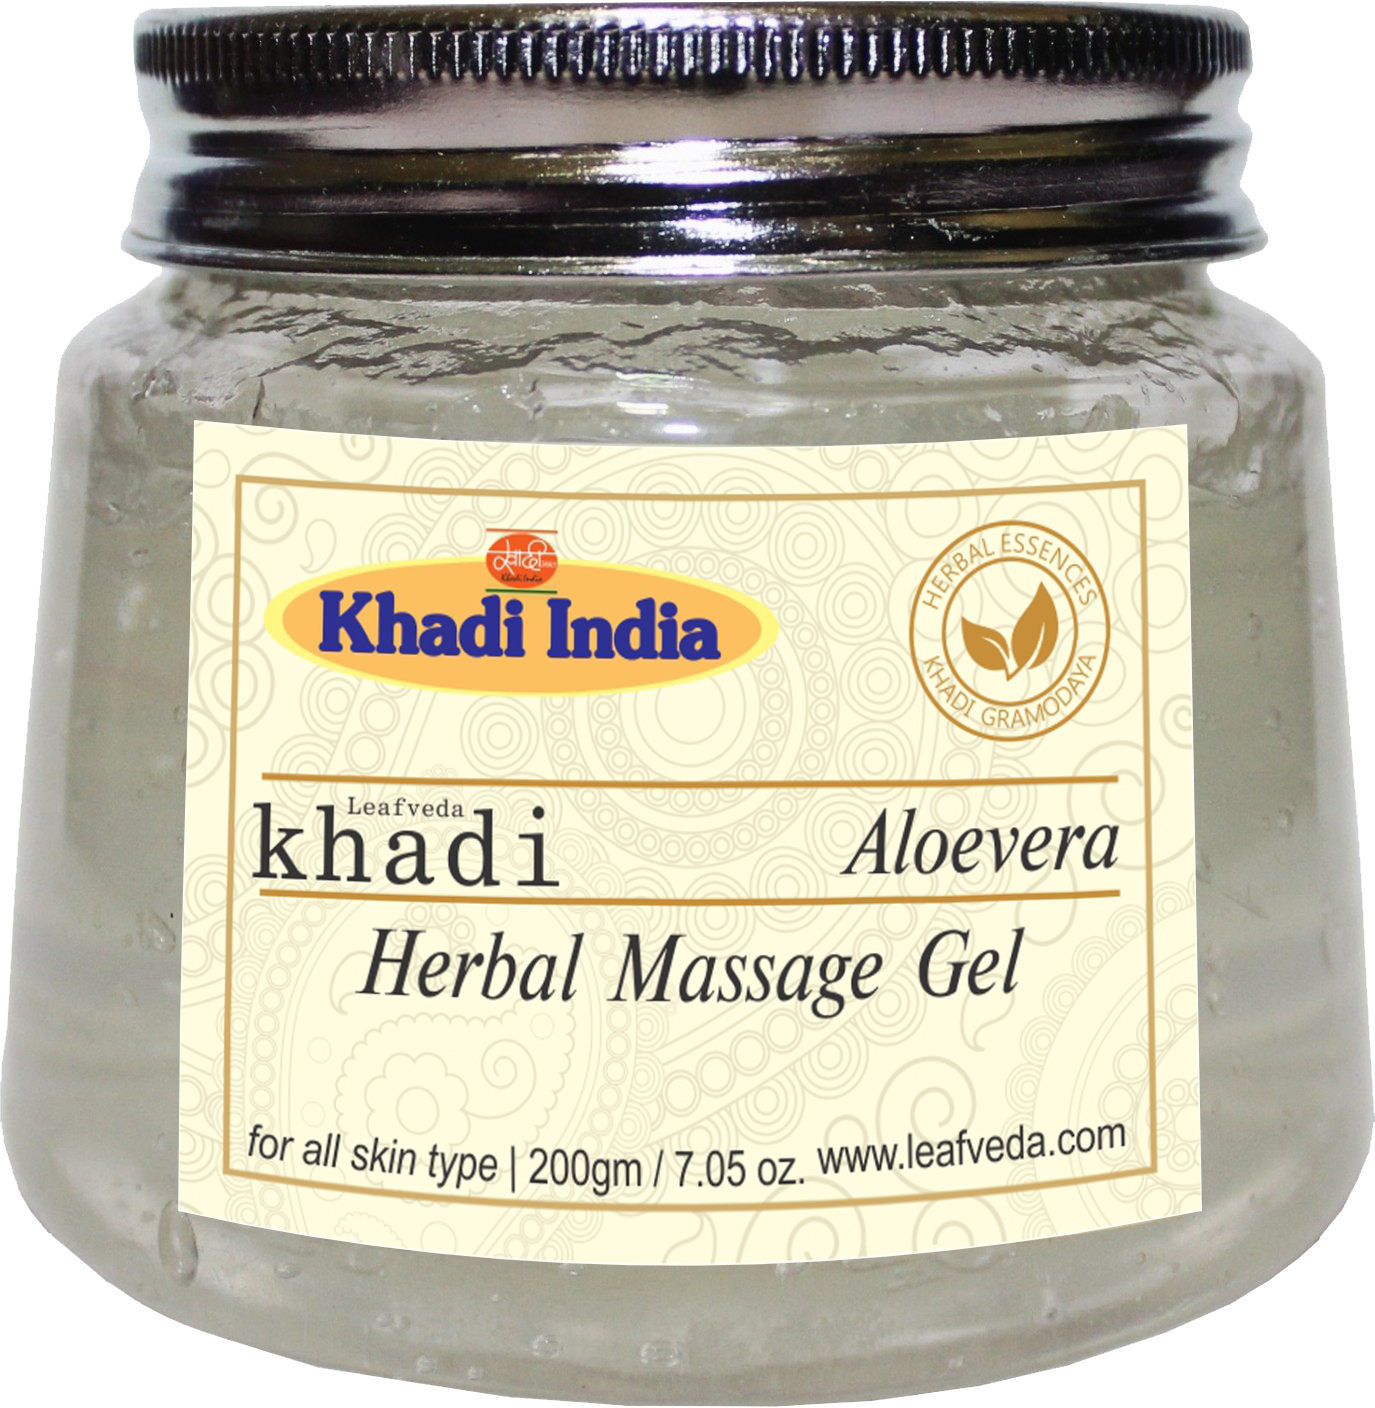 Buy Khadi Natural Aloevera Gel at Best Price Online